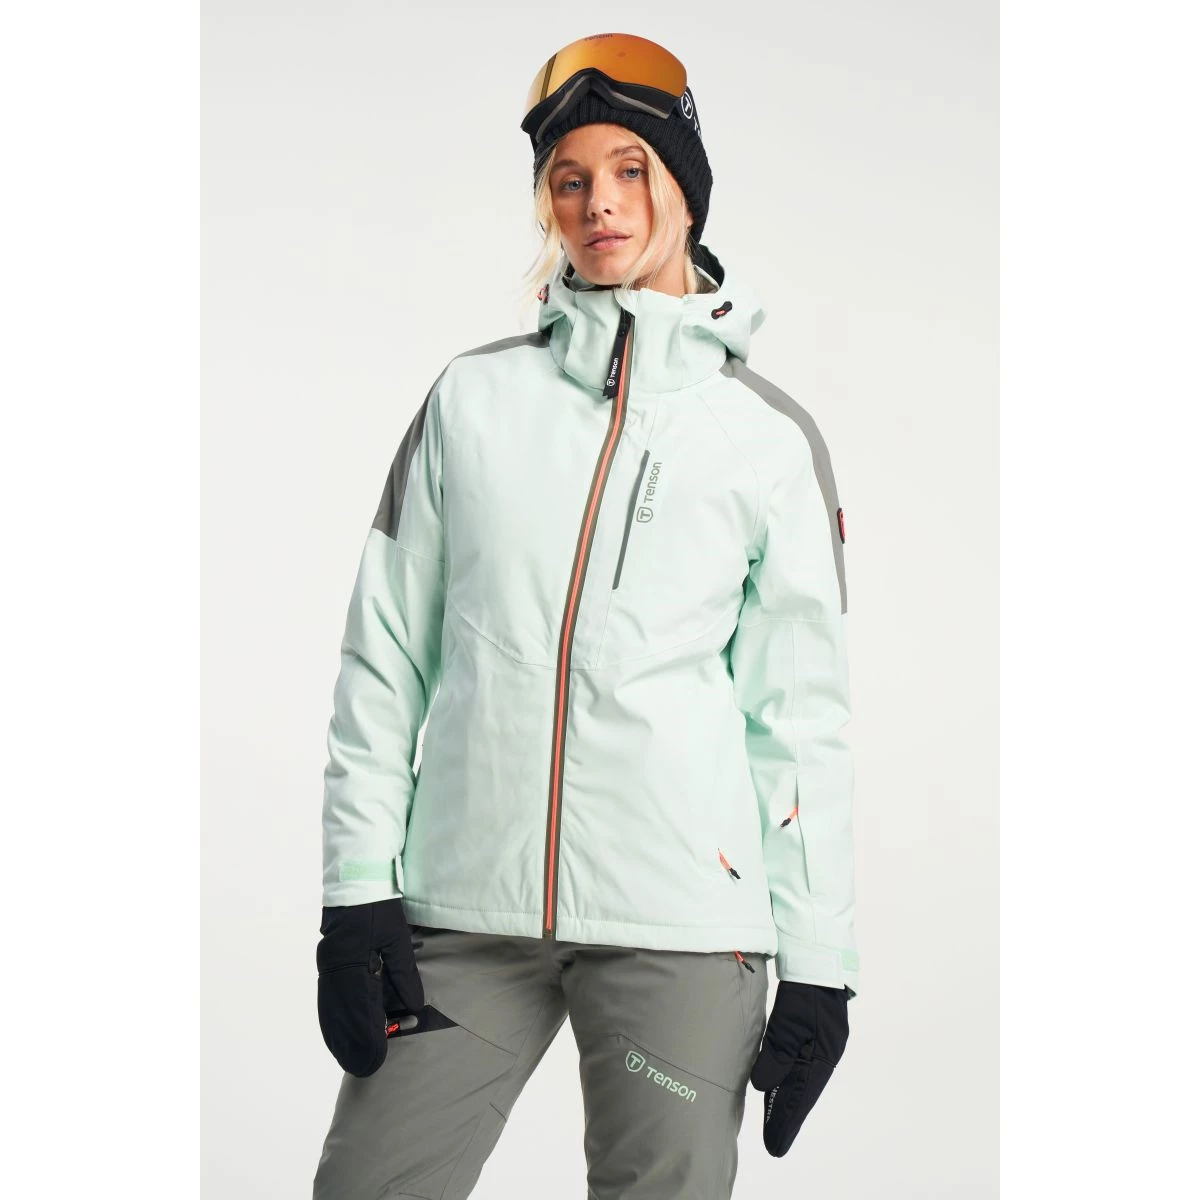 koper Vervelen overhemd Tenson Core Ski Jas - Ski jassen - Wintersportkleding - Wintersport -  Intersport van den Broek / Biggelaar